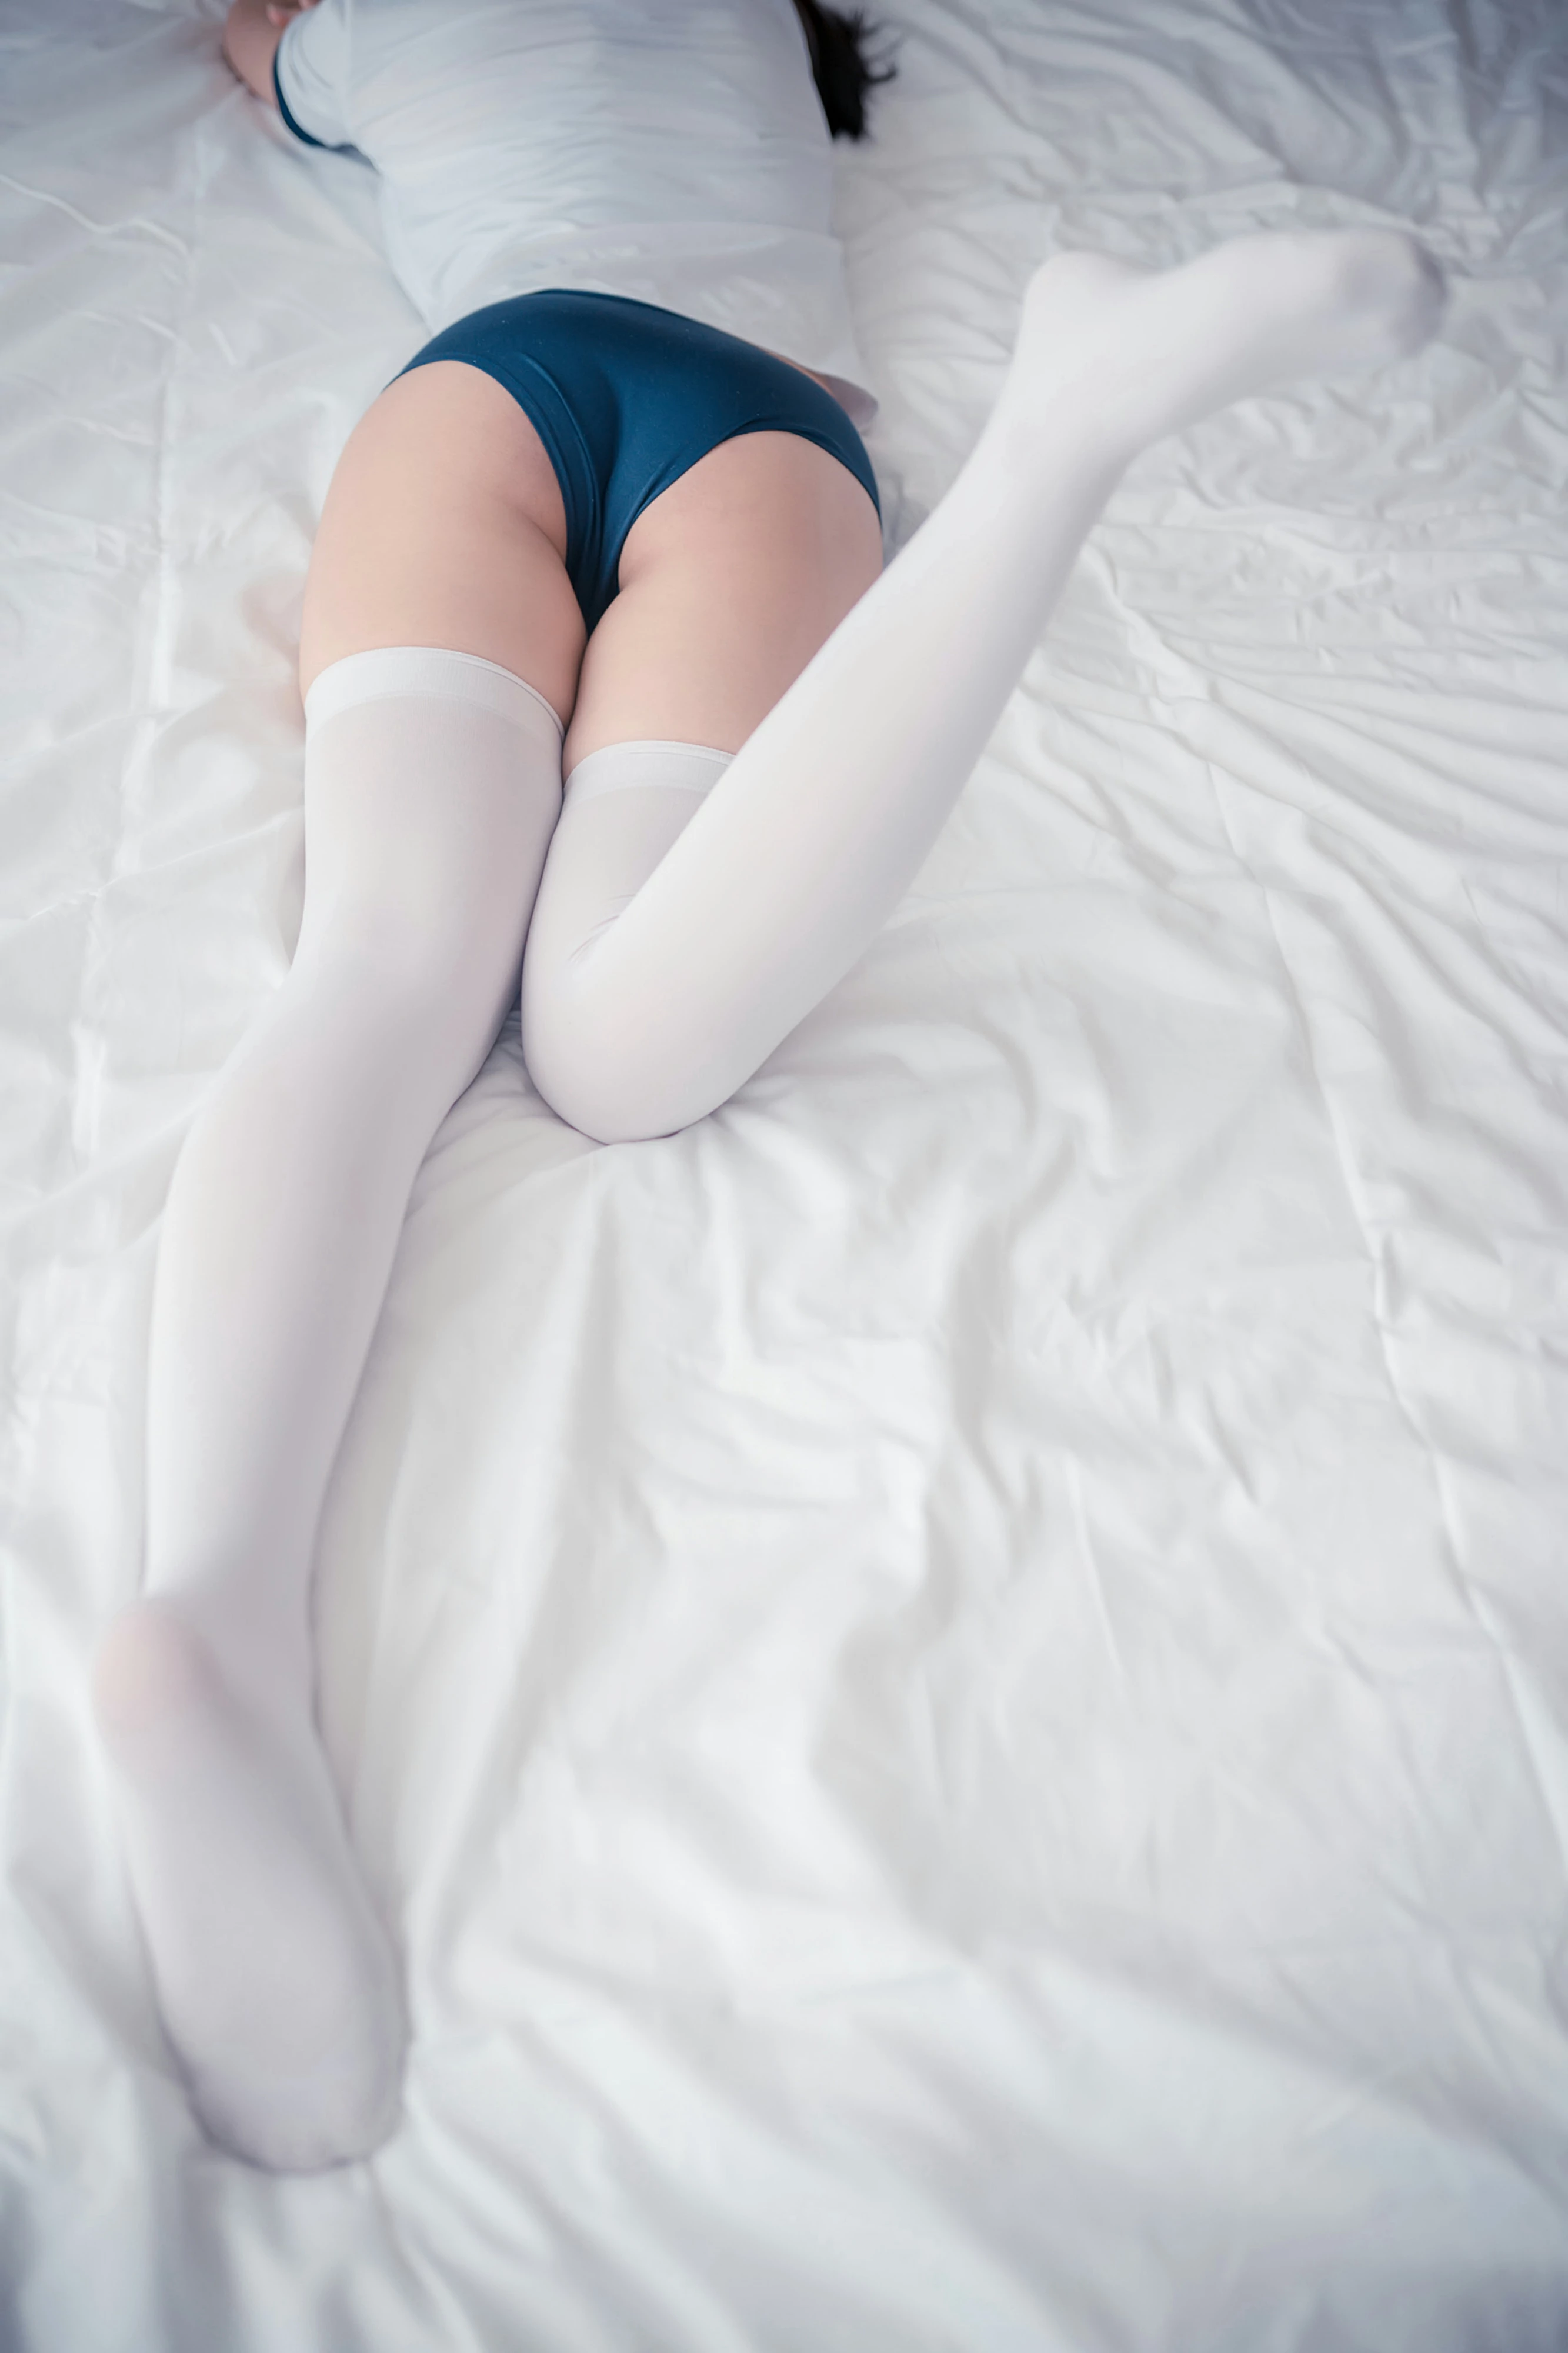 [风之领域]NO.071 性感小萝莉 白色紧身短袖与蓝色安全裤加白色丝袜美腿私房写真集,